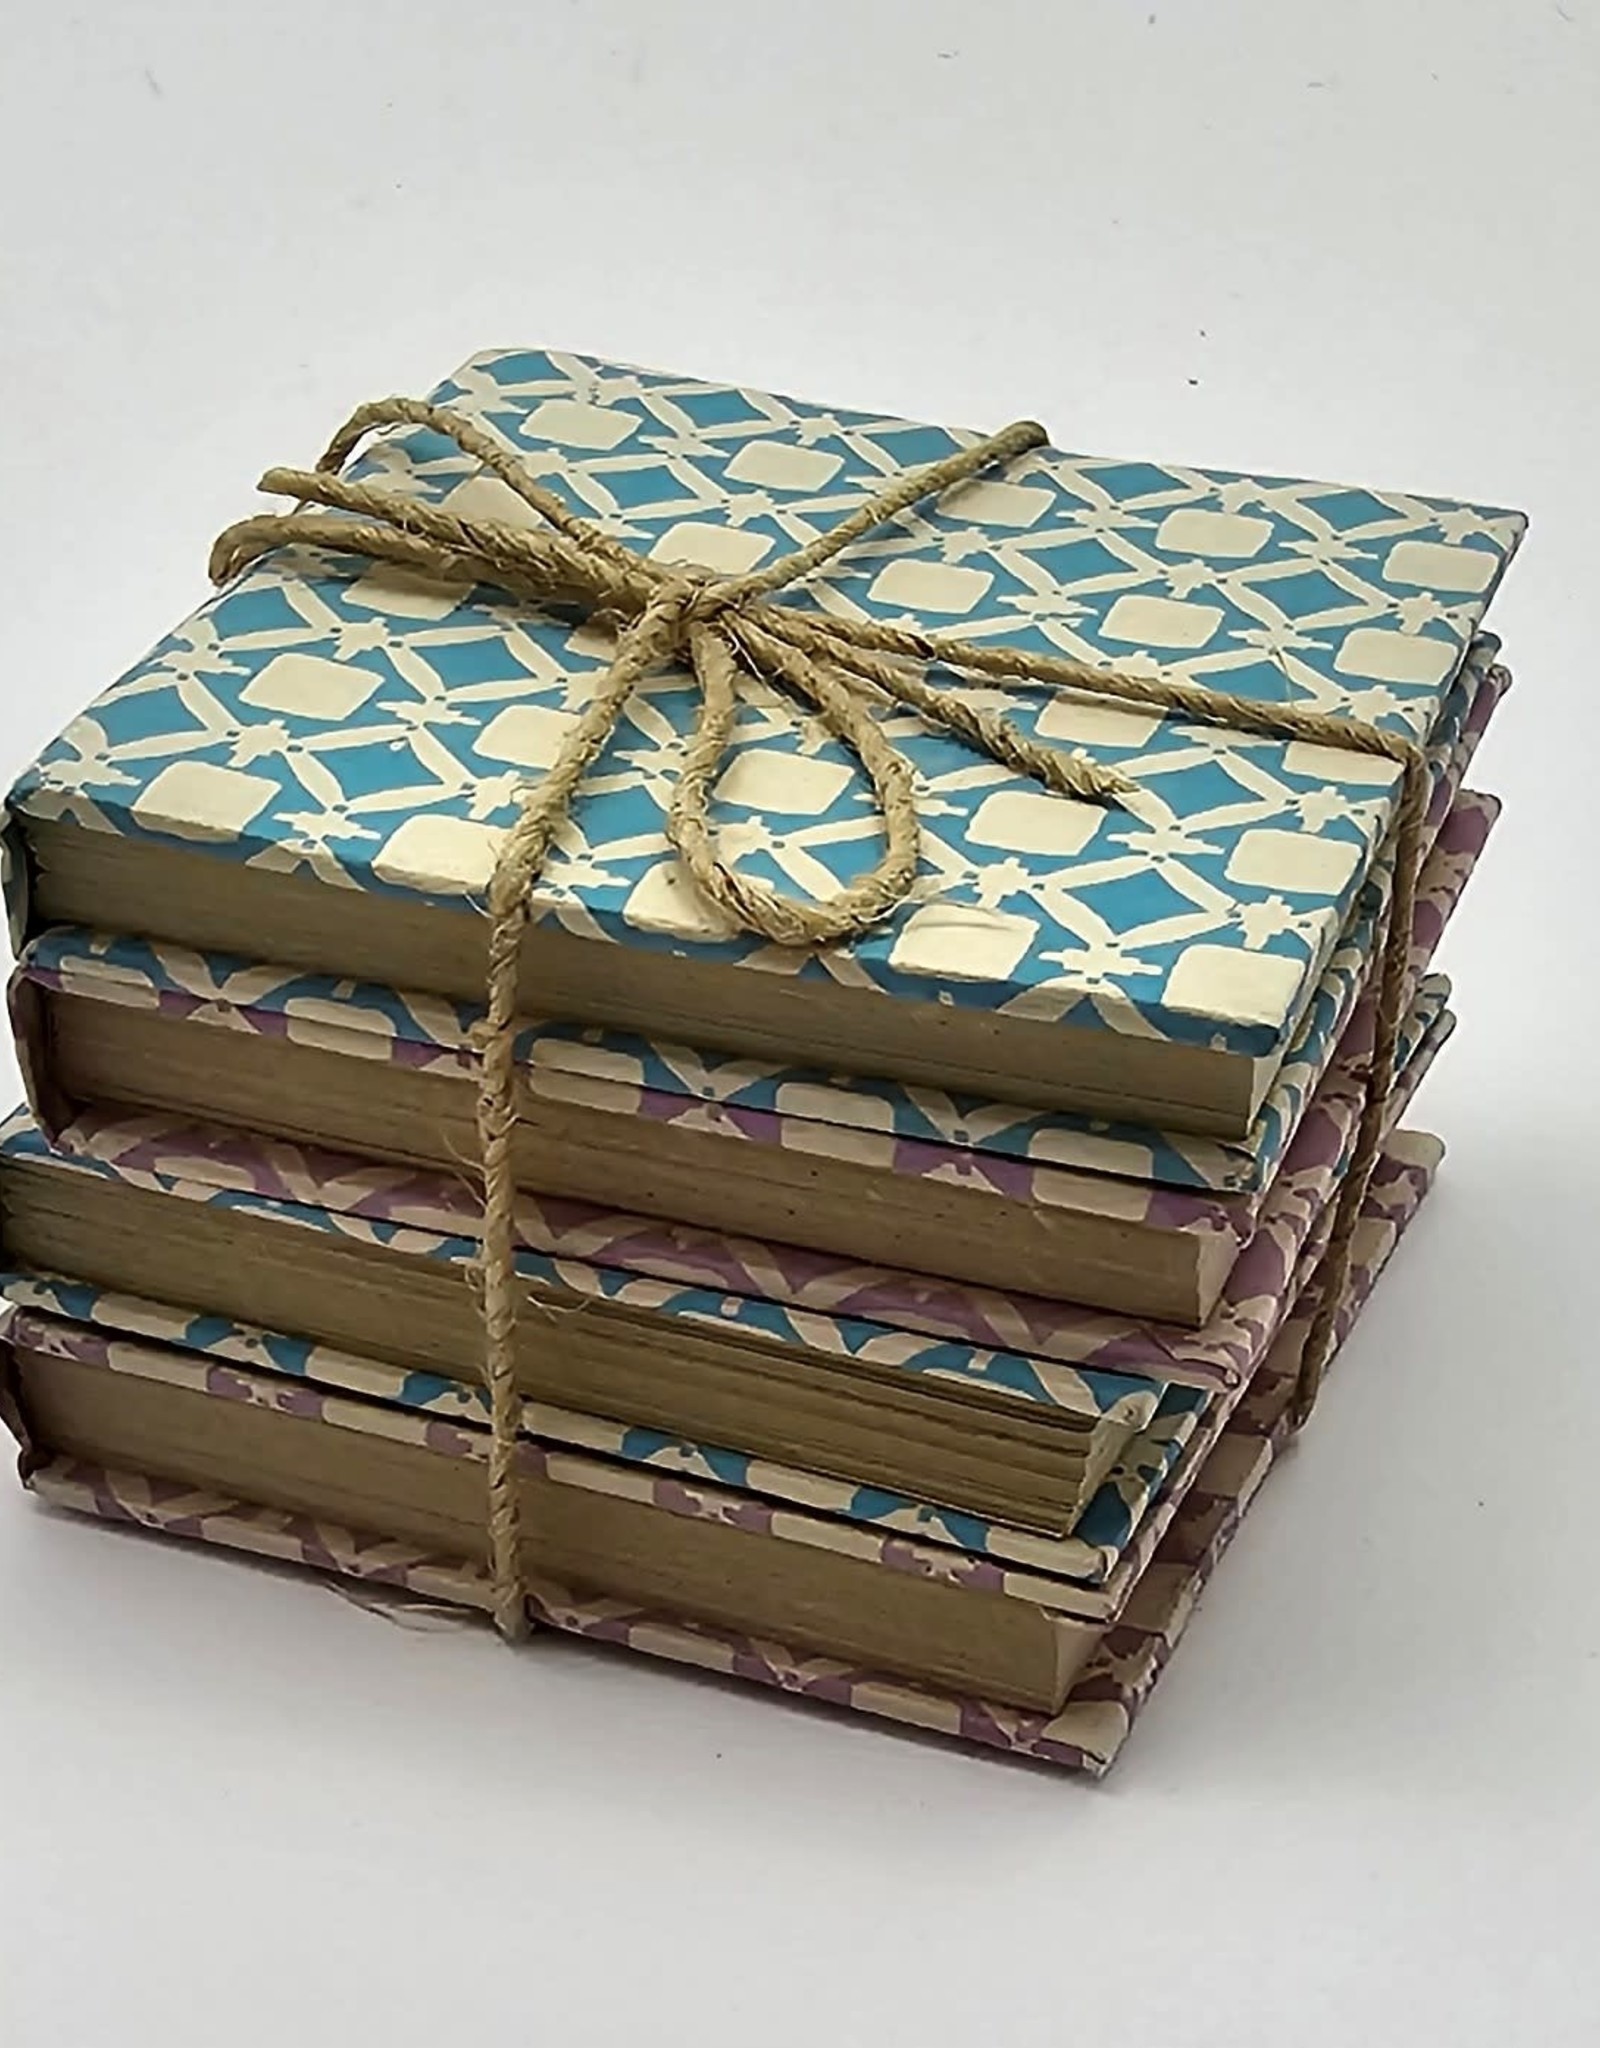 Ten Thousand Villages Canada Shuktara Handmade Paper Small Notebook - Set of 4